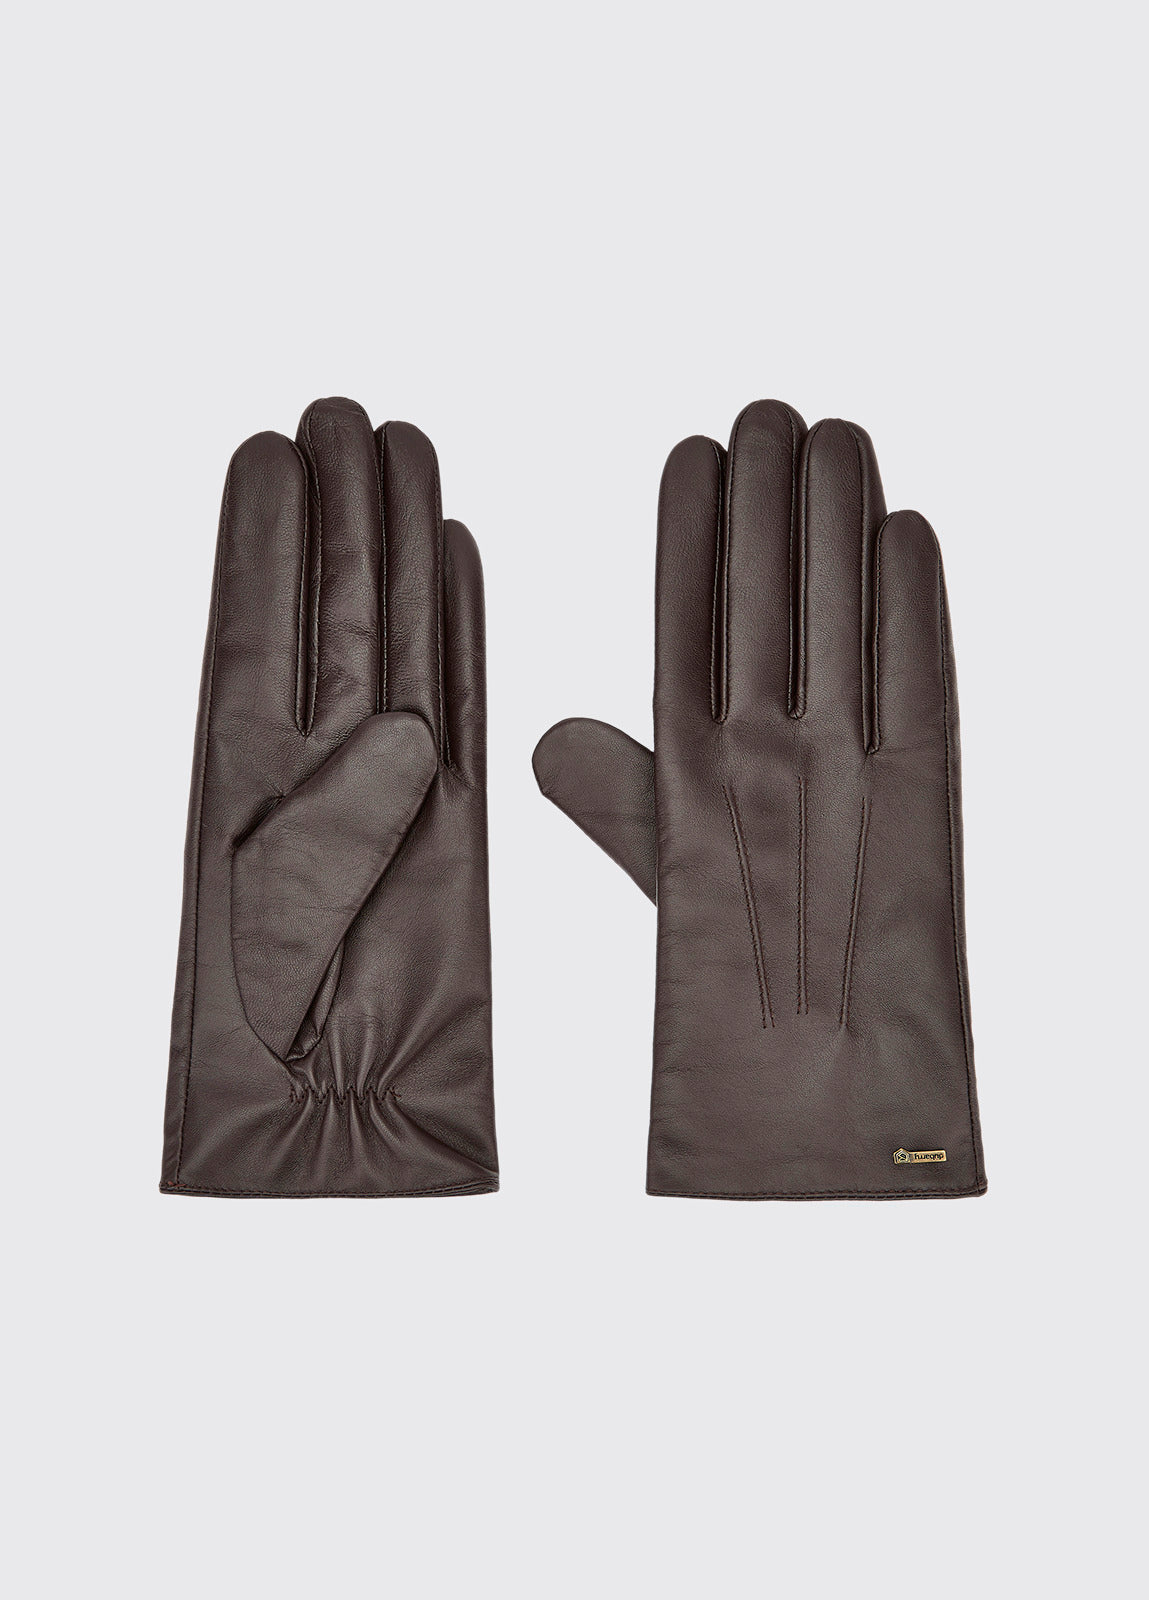 Sheehan Gloves - Mahogany